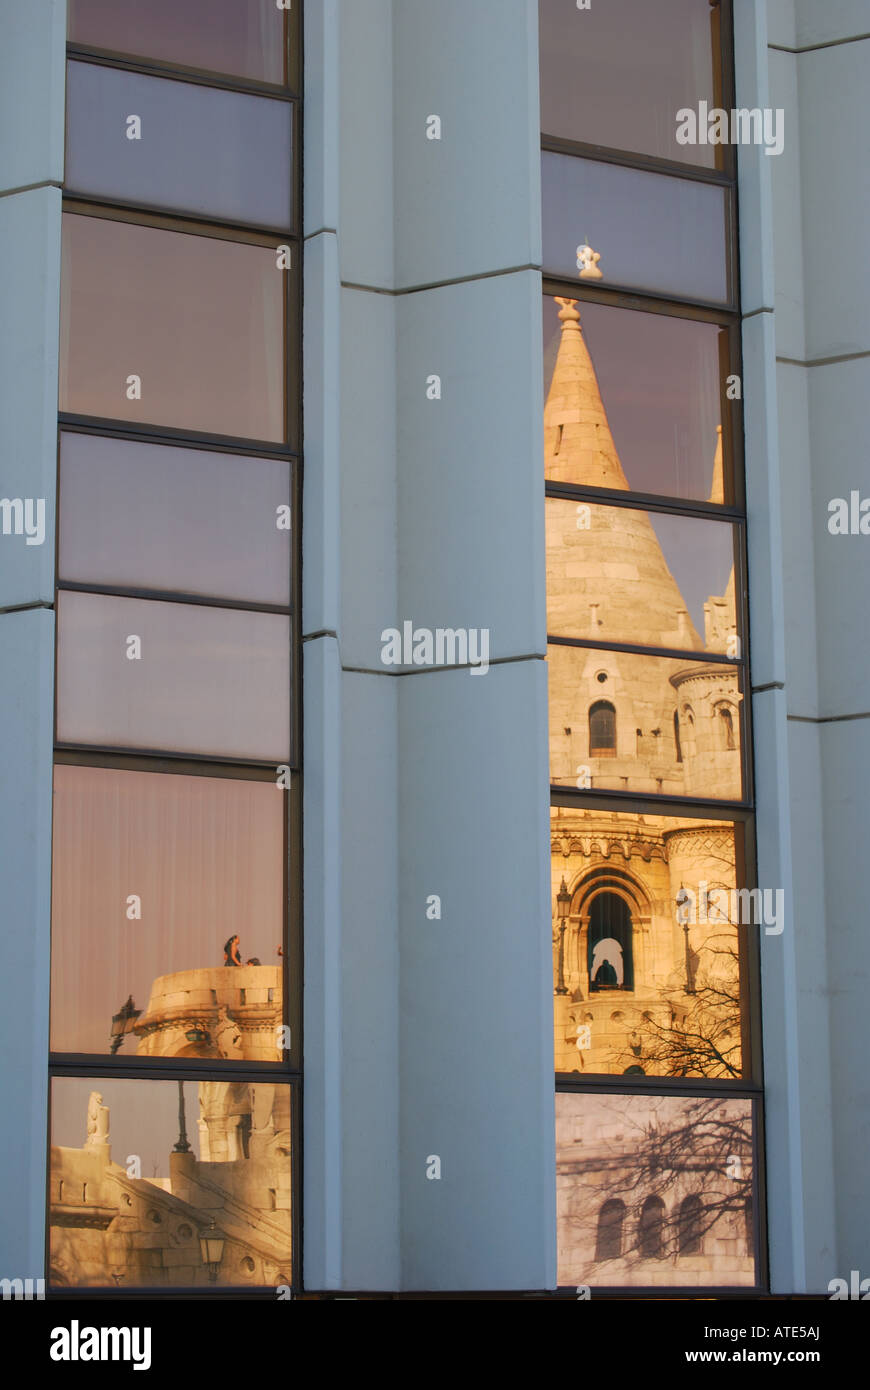 Riflessioni del Bastione del Pescatore in vetro, Budapest Hotel Hilton, il quartiere del Castello di Buda, Budapest, Repubblica di Ungheria Foto Stock